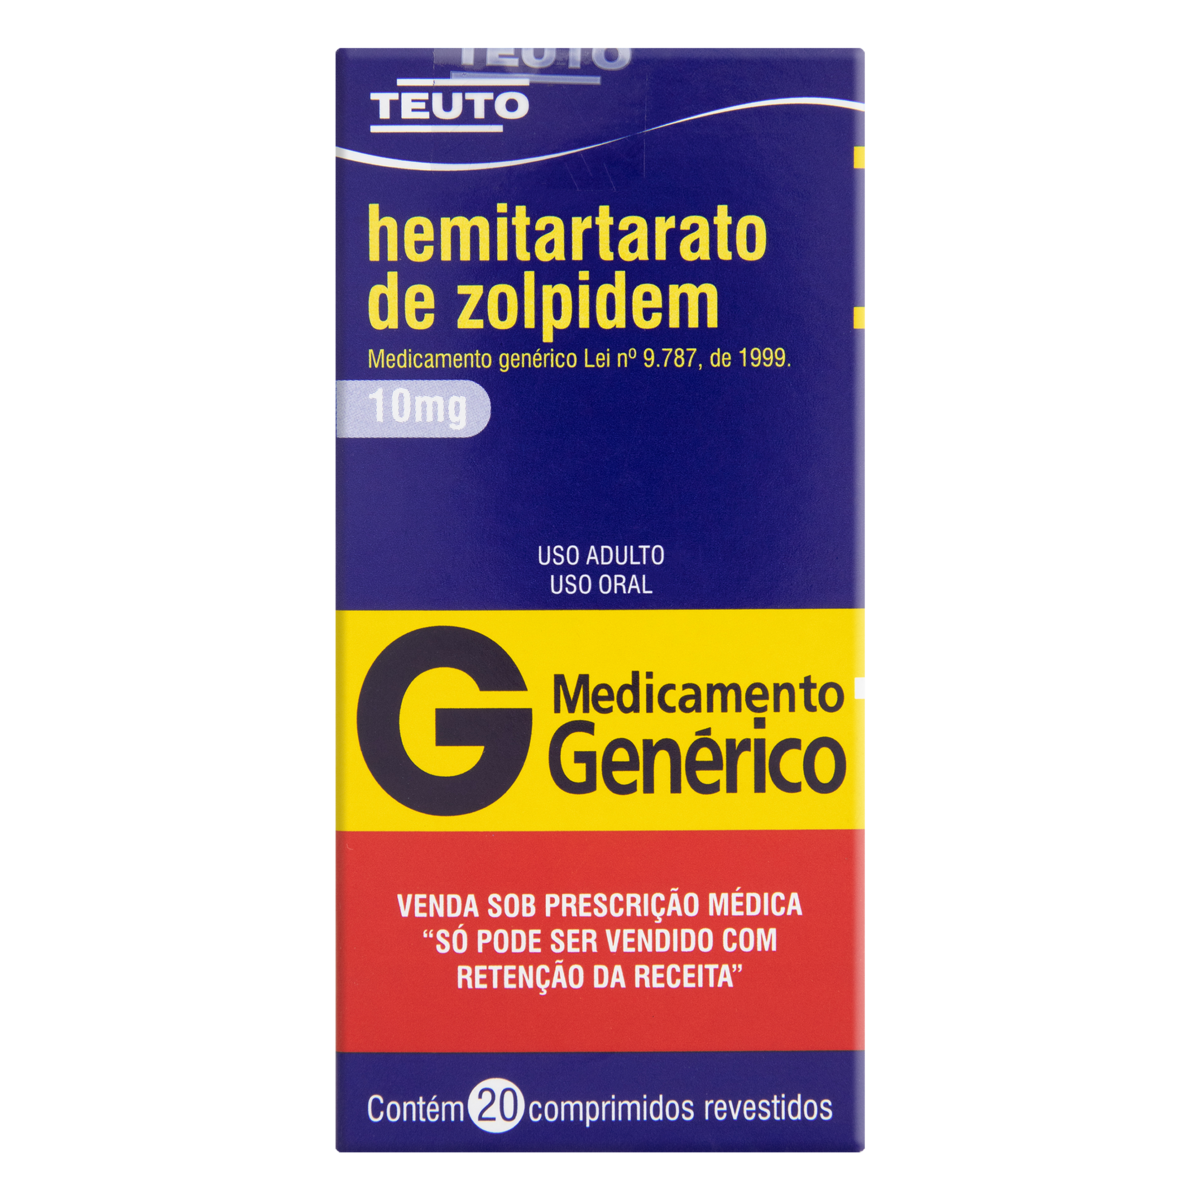 Hemitartarato De Zolpidem 10mg Teuto Caixa 20 Comprimidos Revestidos Gtineanupc 